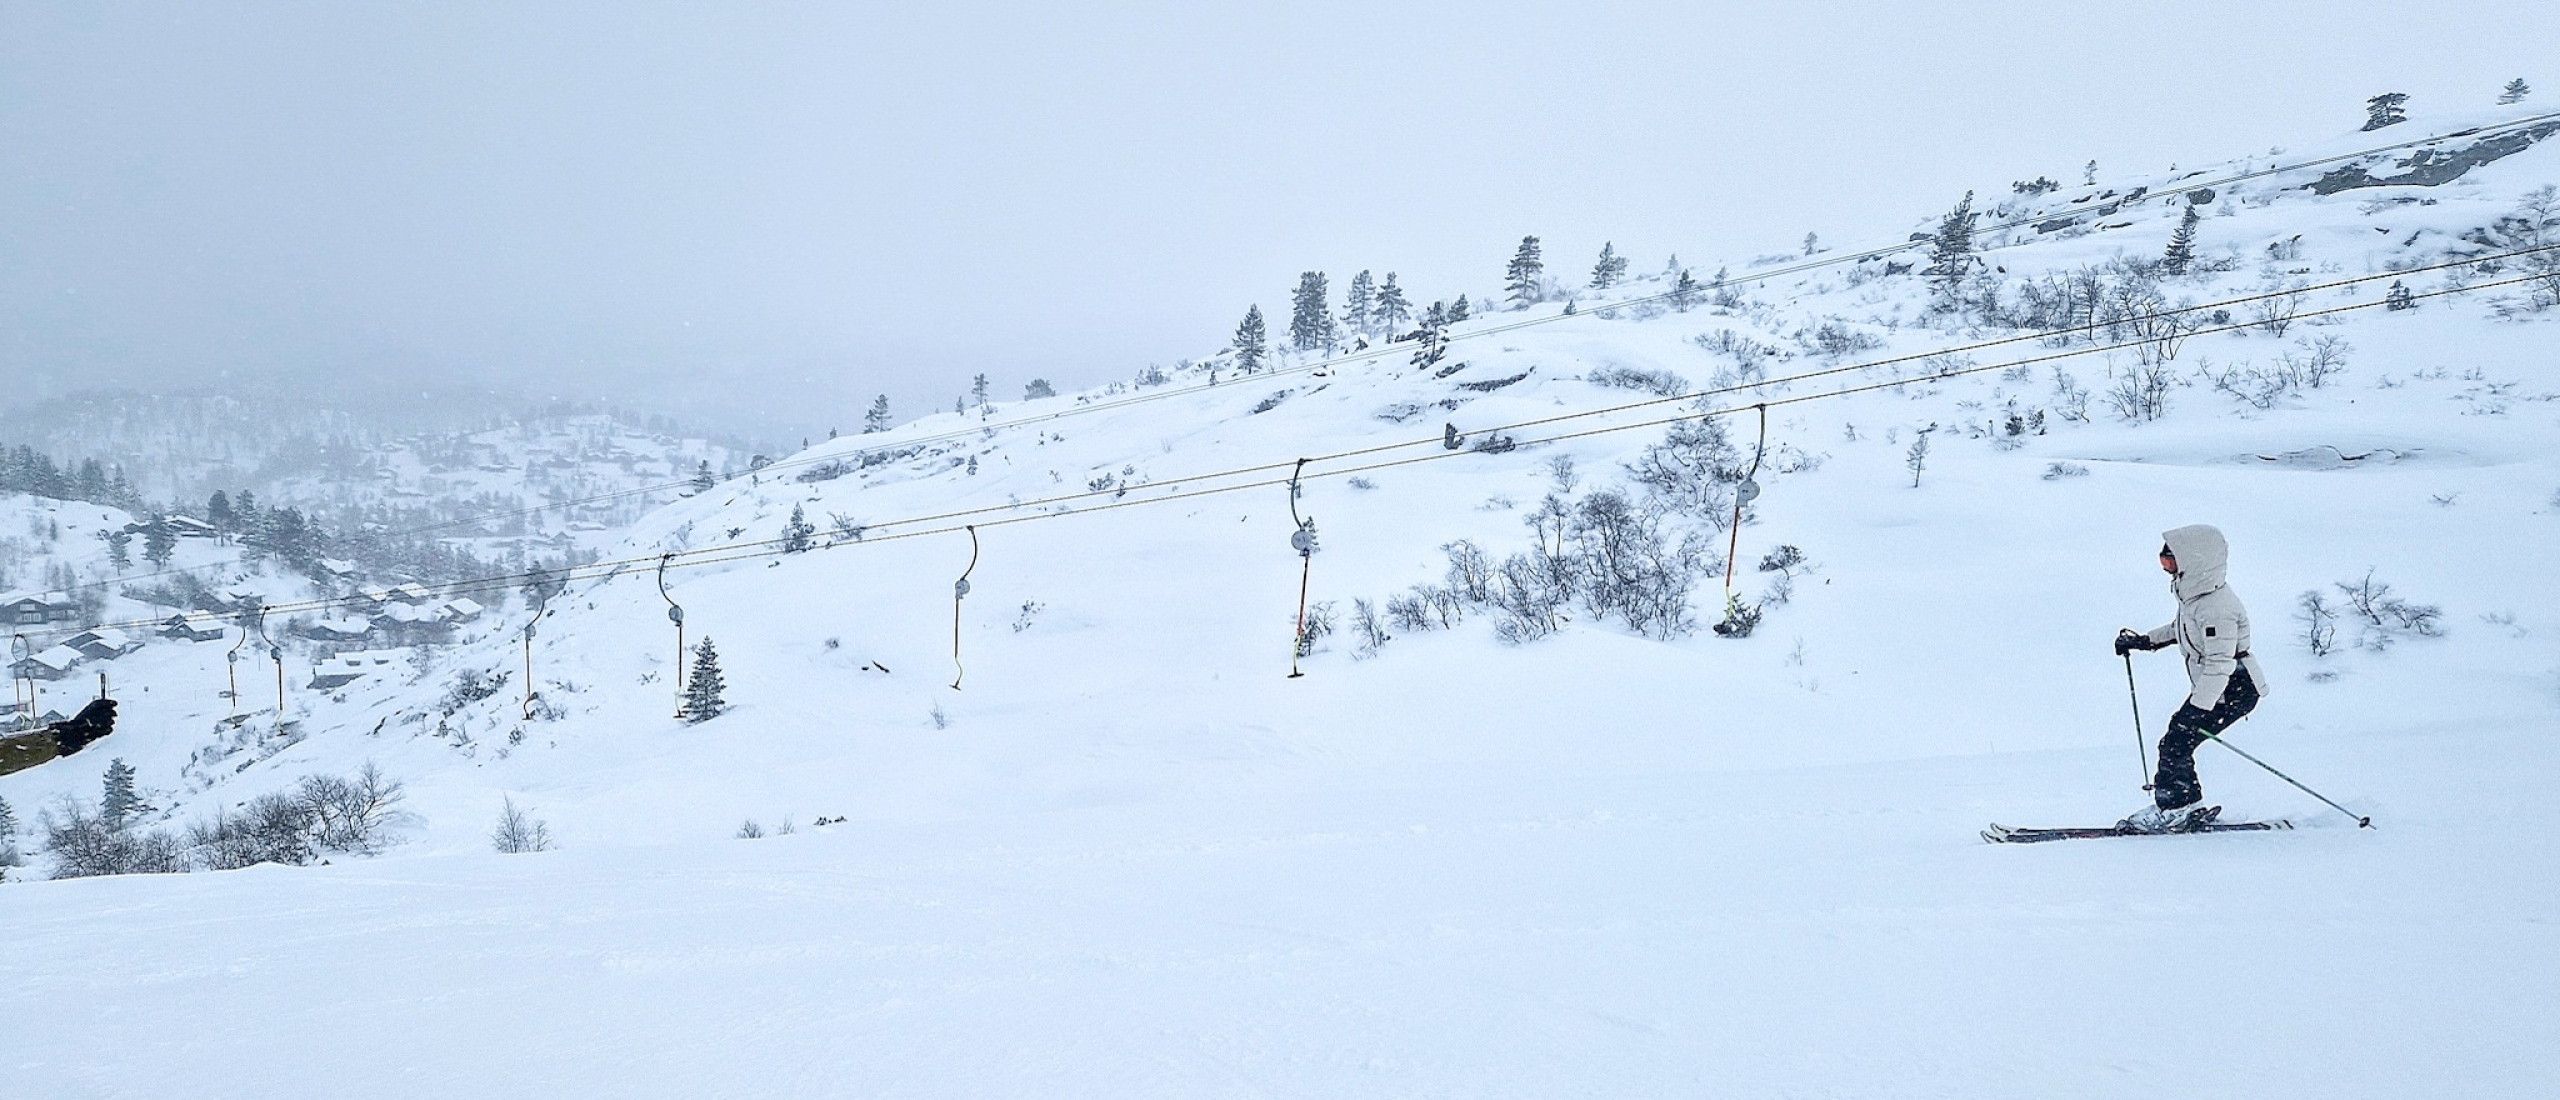 Skiër in actie Setesdal zuid